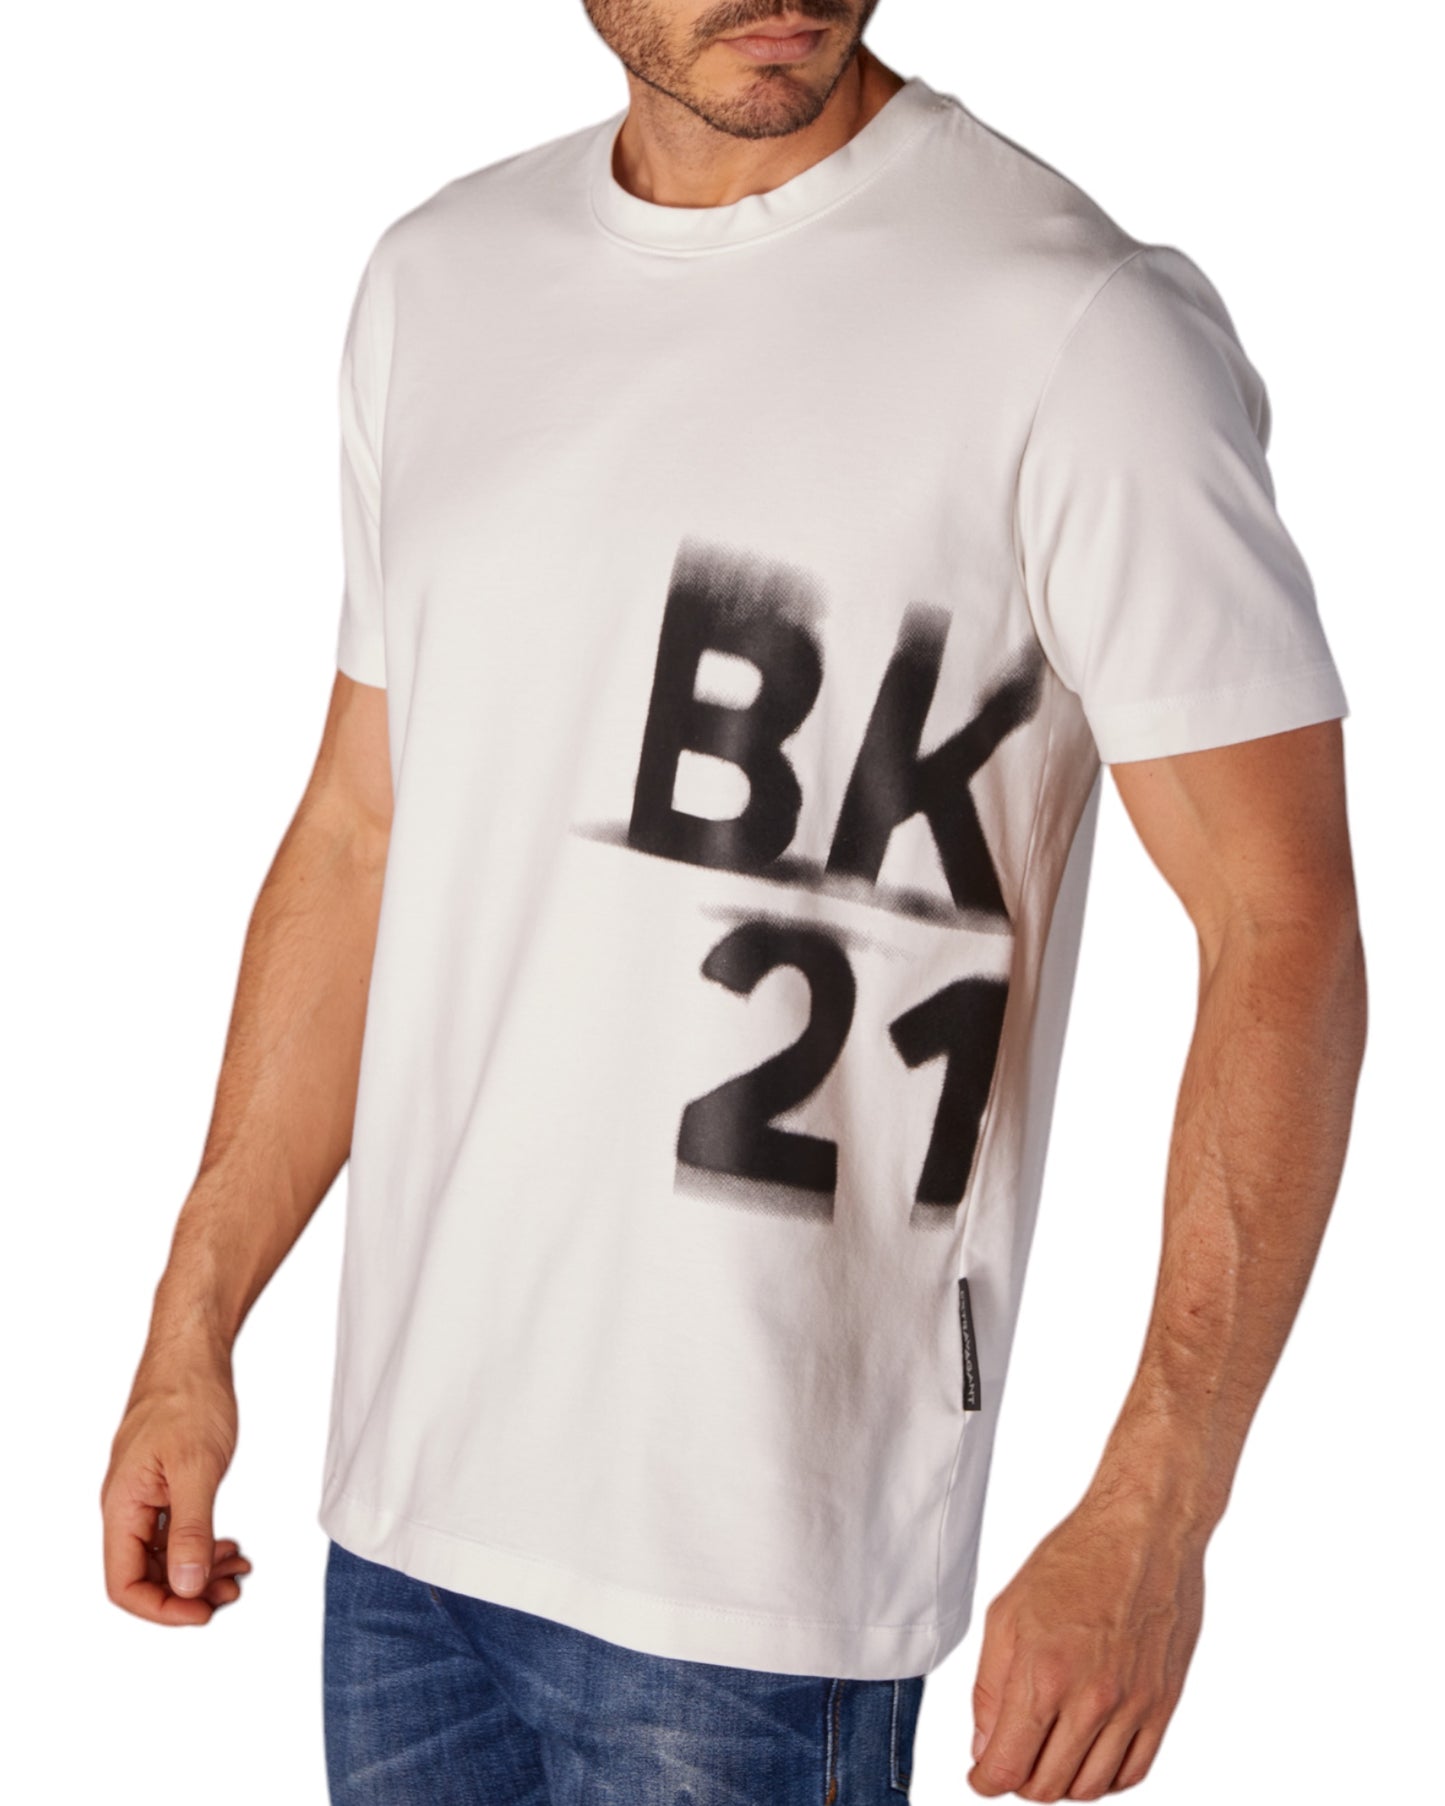 Camisetas BK21